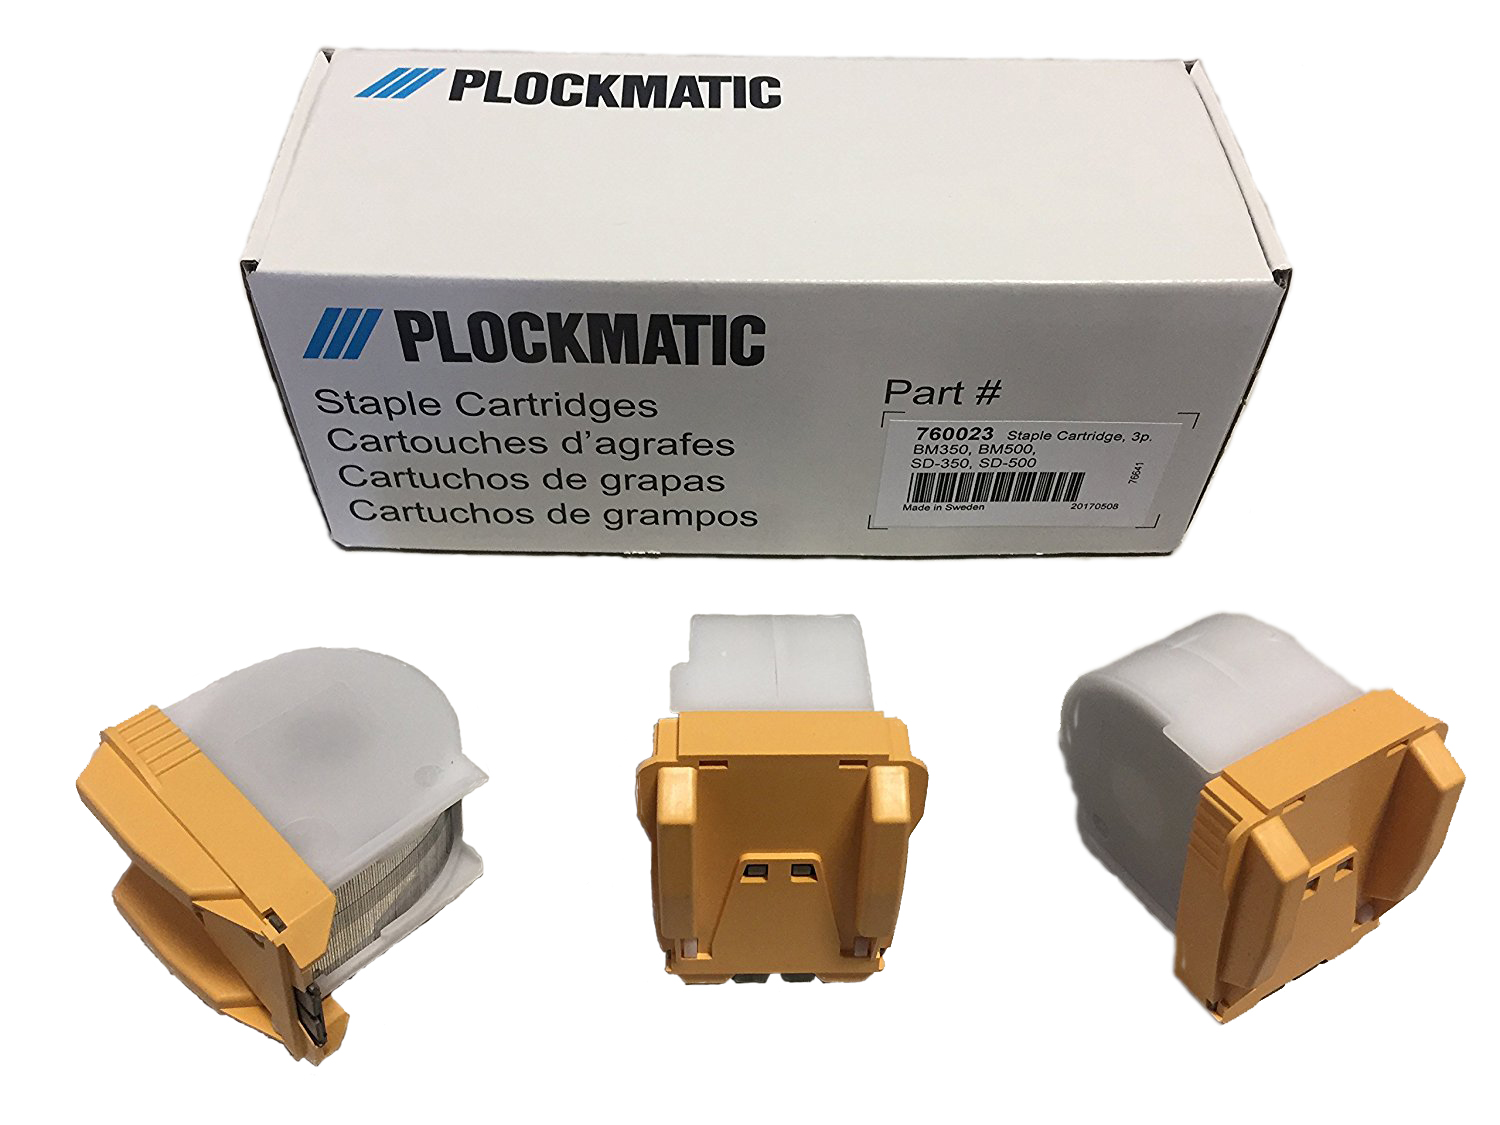 Plockmatic BM230 / BM 350 / BK5030 RICOH PRO C651/C651EX/C751/C751EX Staple Cartridge (3-Pack - 15,000 total staples) - 40461, 760023, 404461